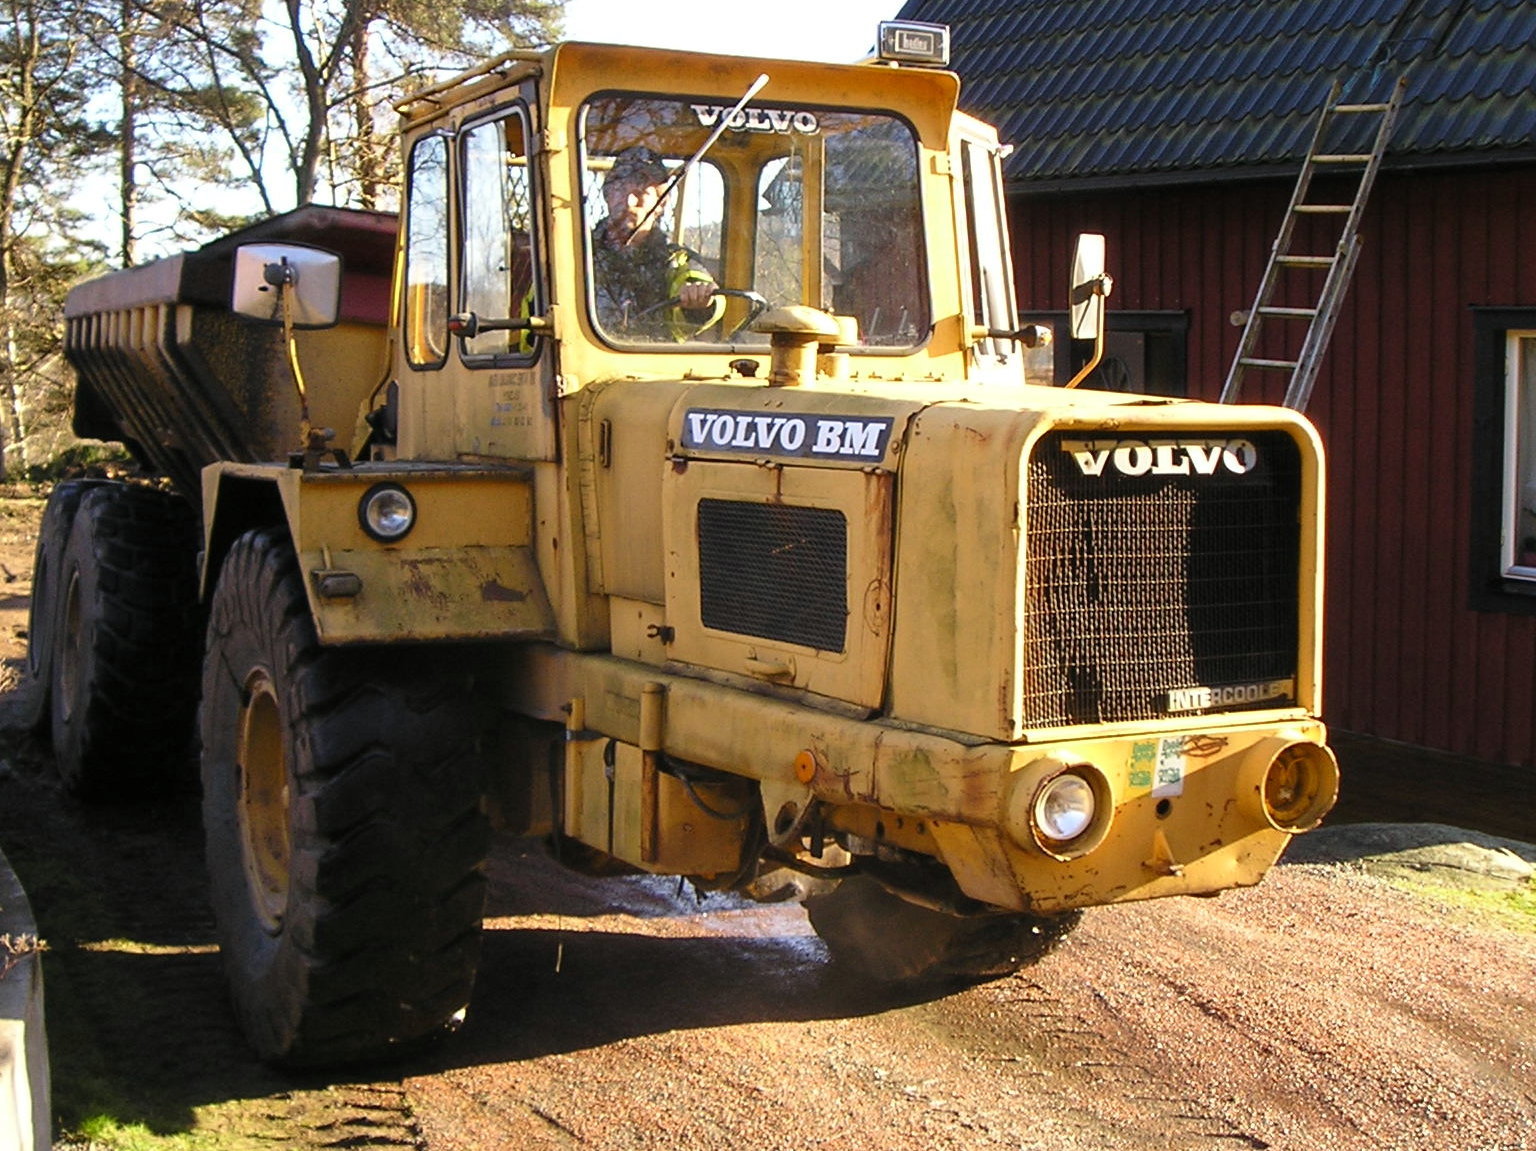 Modèle : Volvo -BM T810C